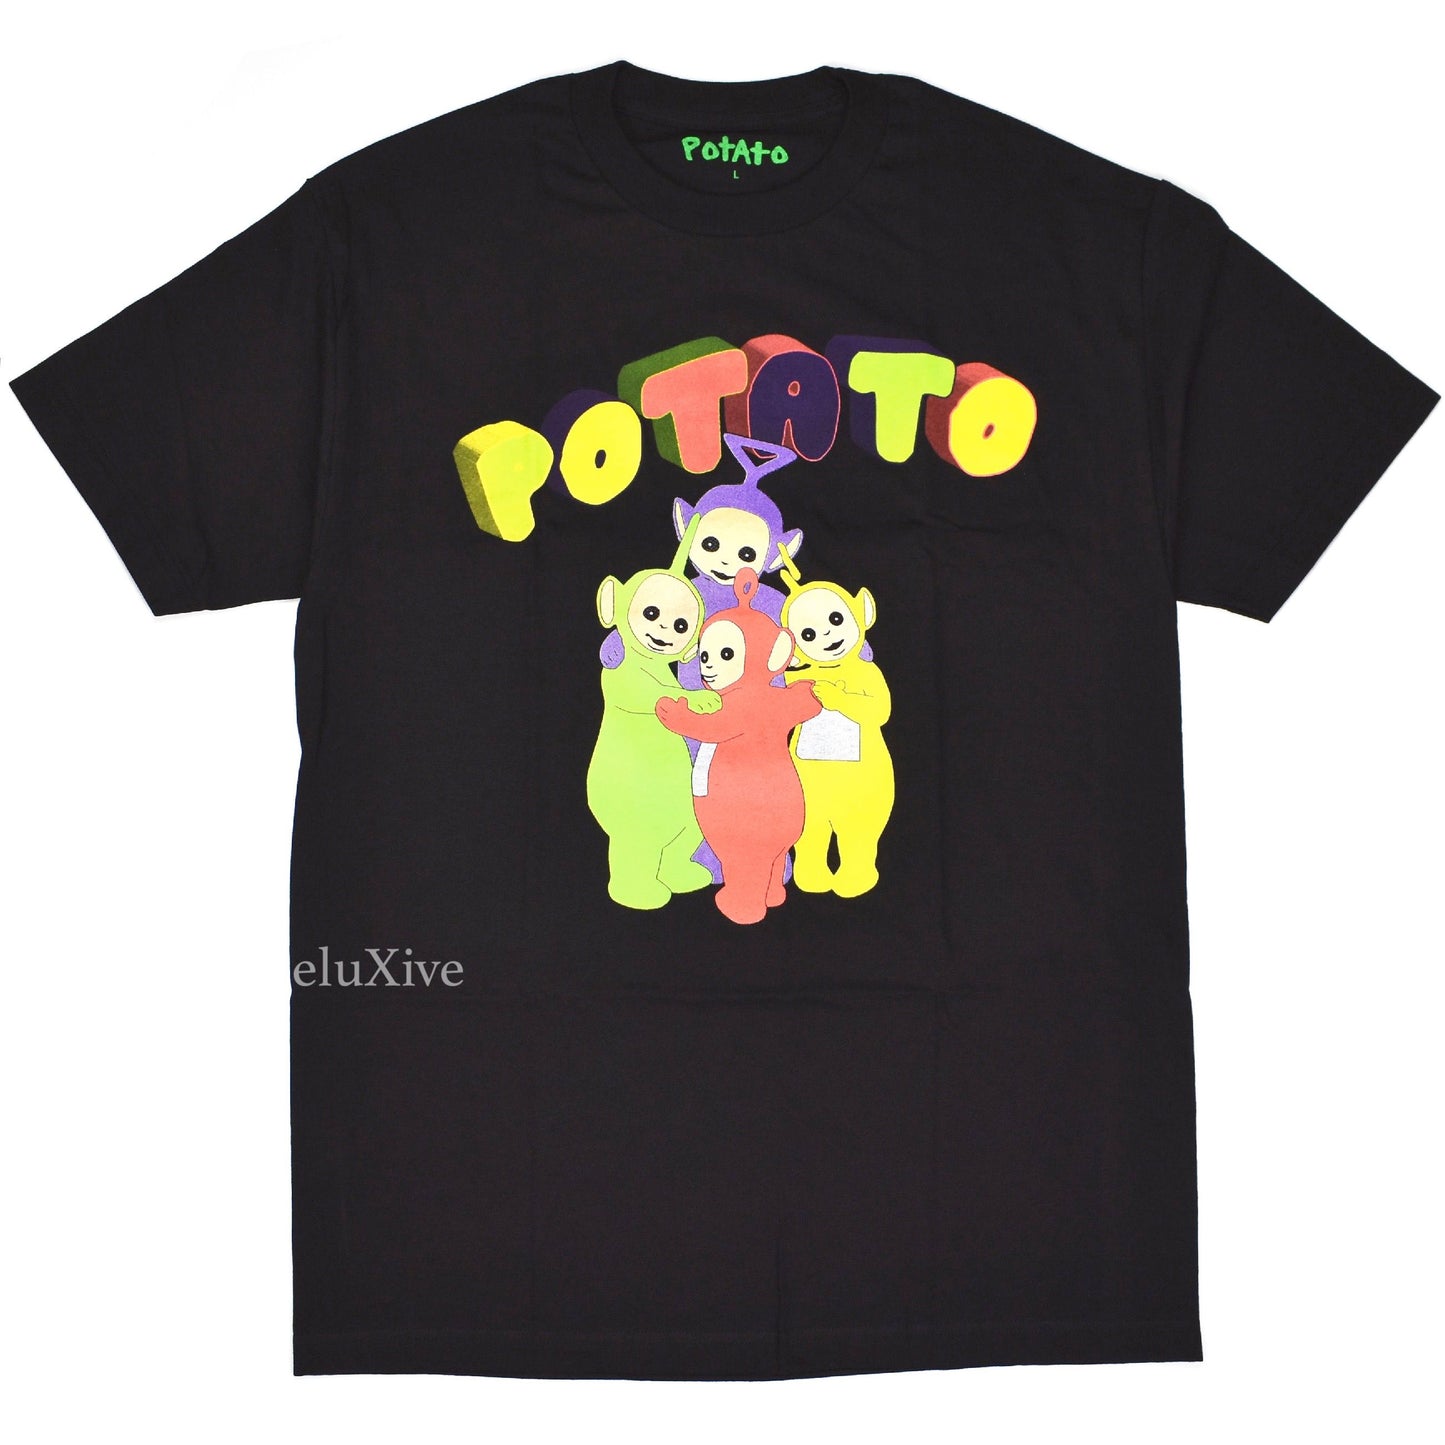 Imran Potato - Black 'Teletubbies' Tubby Logo T-Shirt